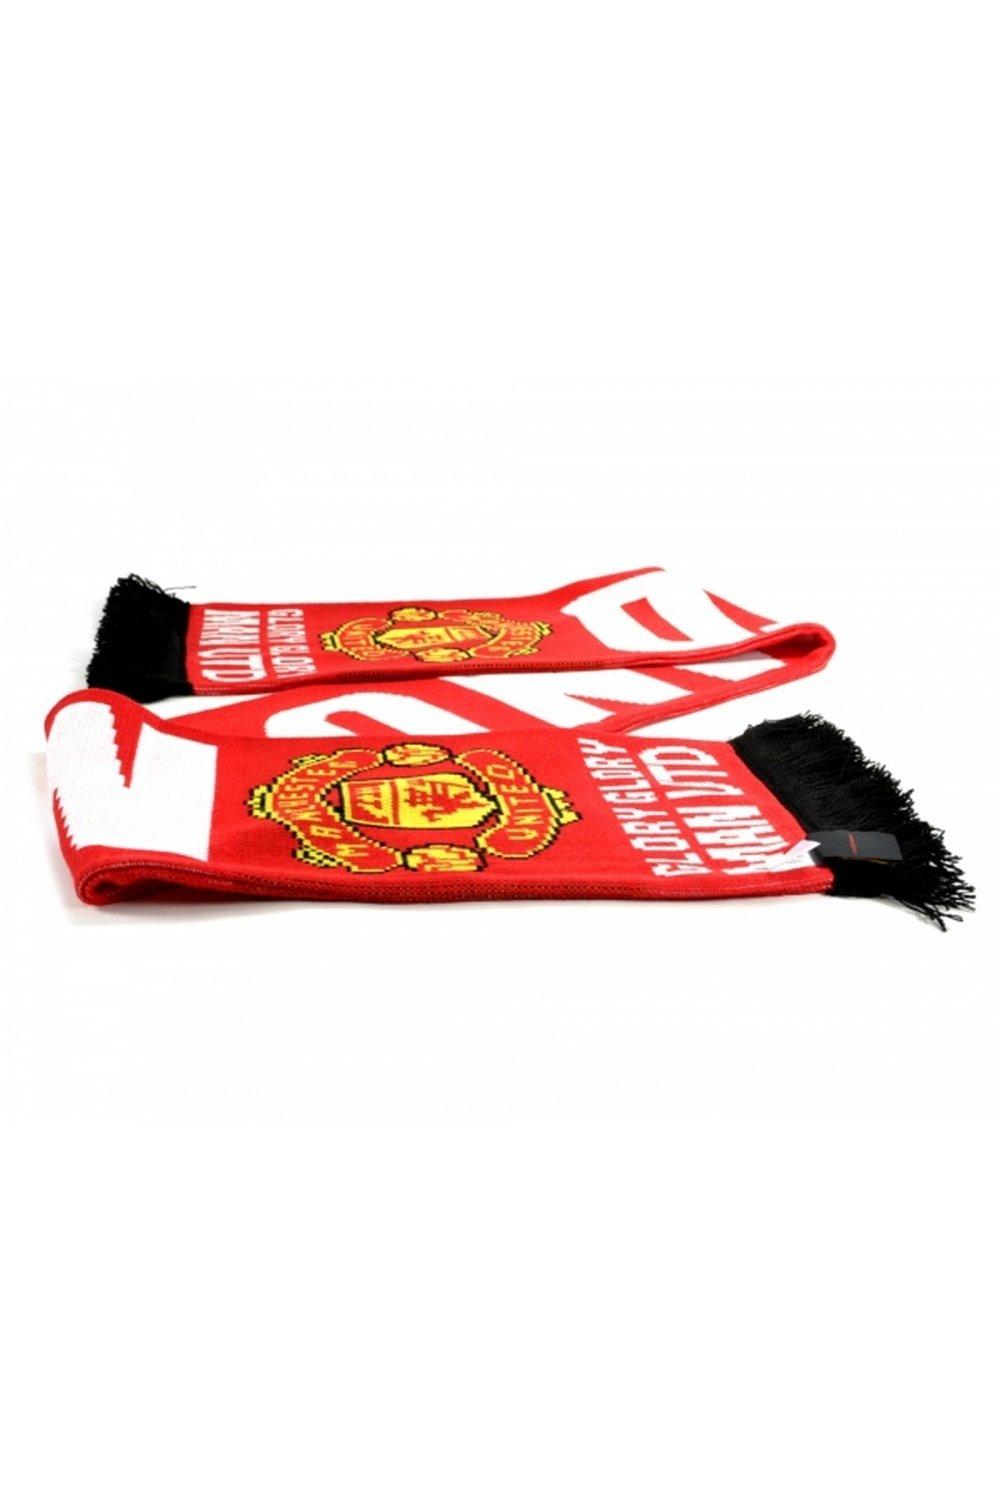 Официальный шарф Football Glory Glory Manchester United FC, мультиколор inspire шарф вязаный песочный